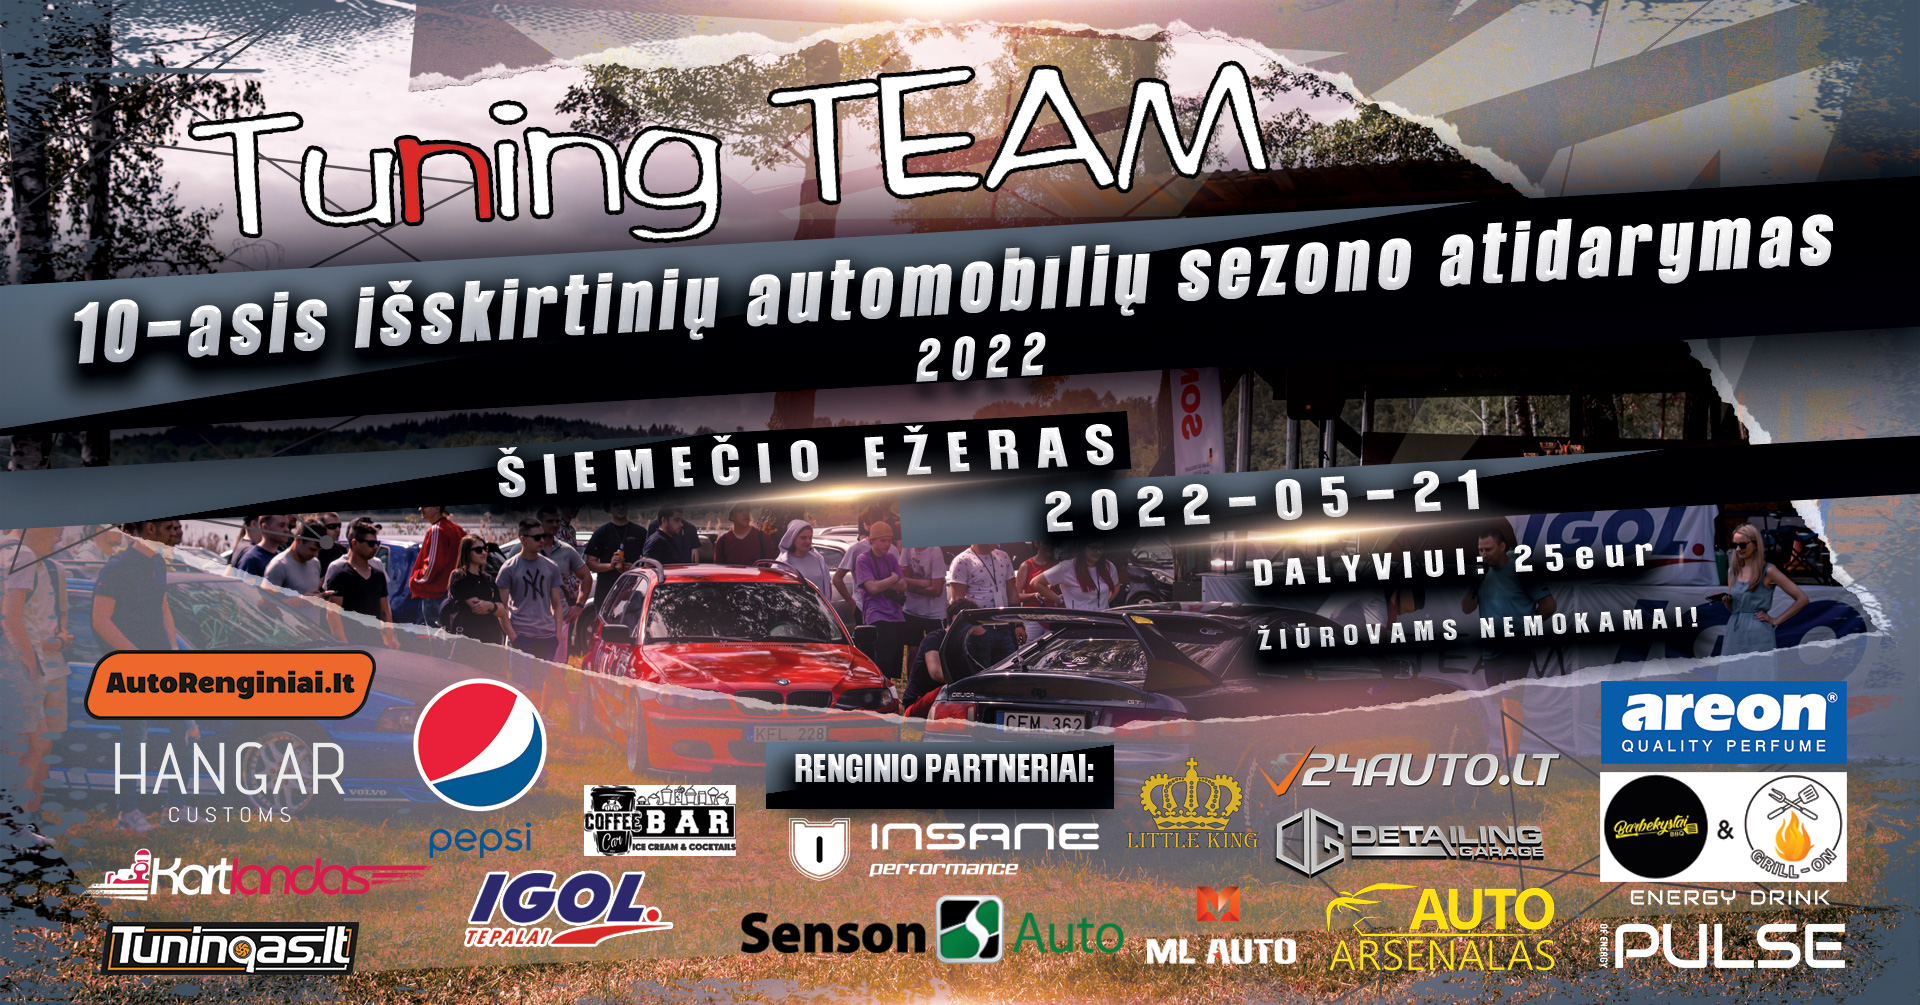 Tuning TEAM 10-asis išskirtinių automobilių sezono atidarymas 2022m